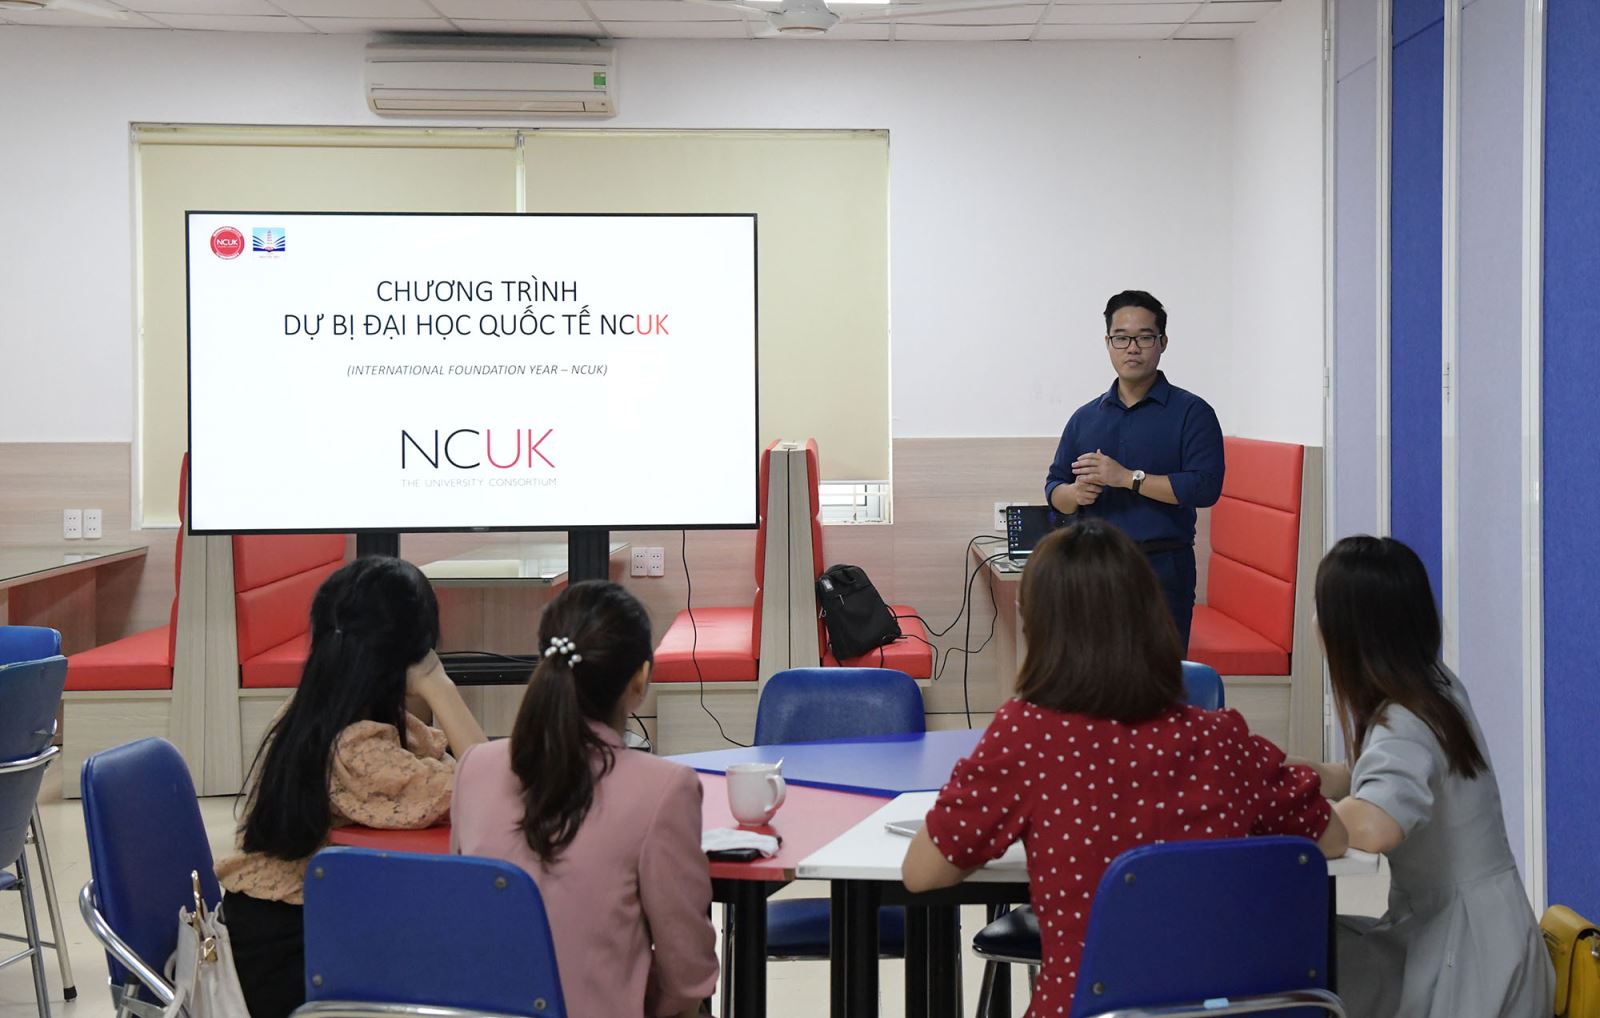 NCUK - chương trình dự bị đại học Quốc tế ưu việt dành cho học sinh Việt Nam